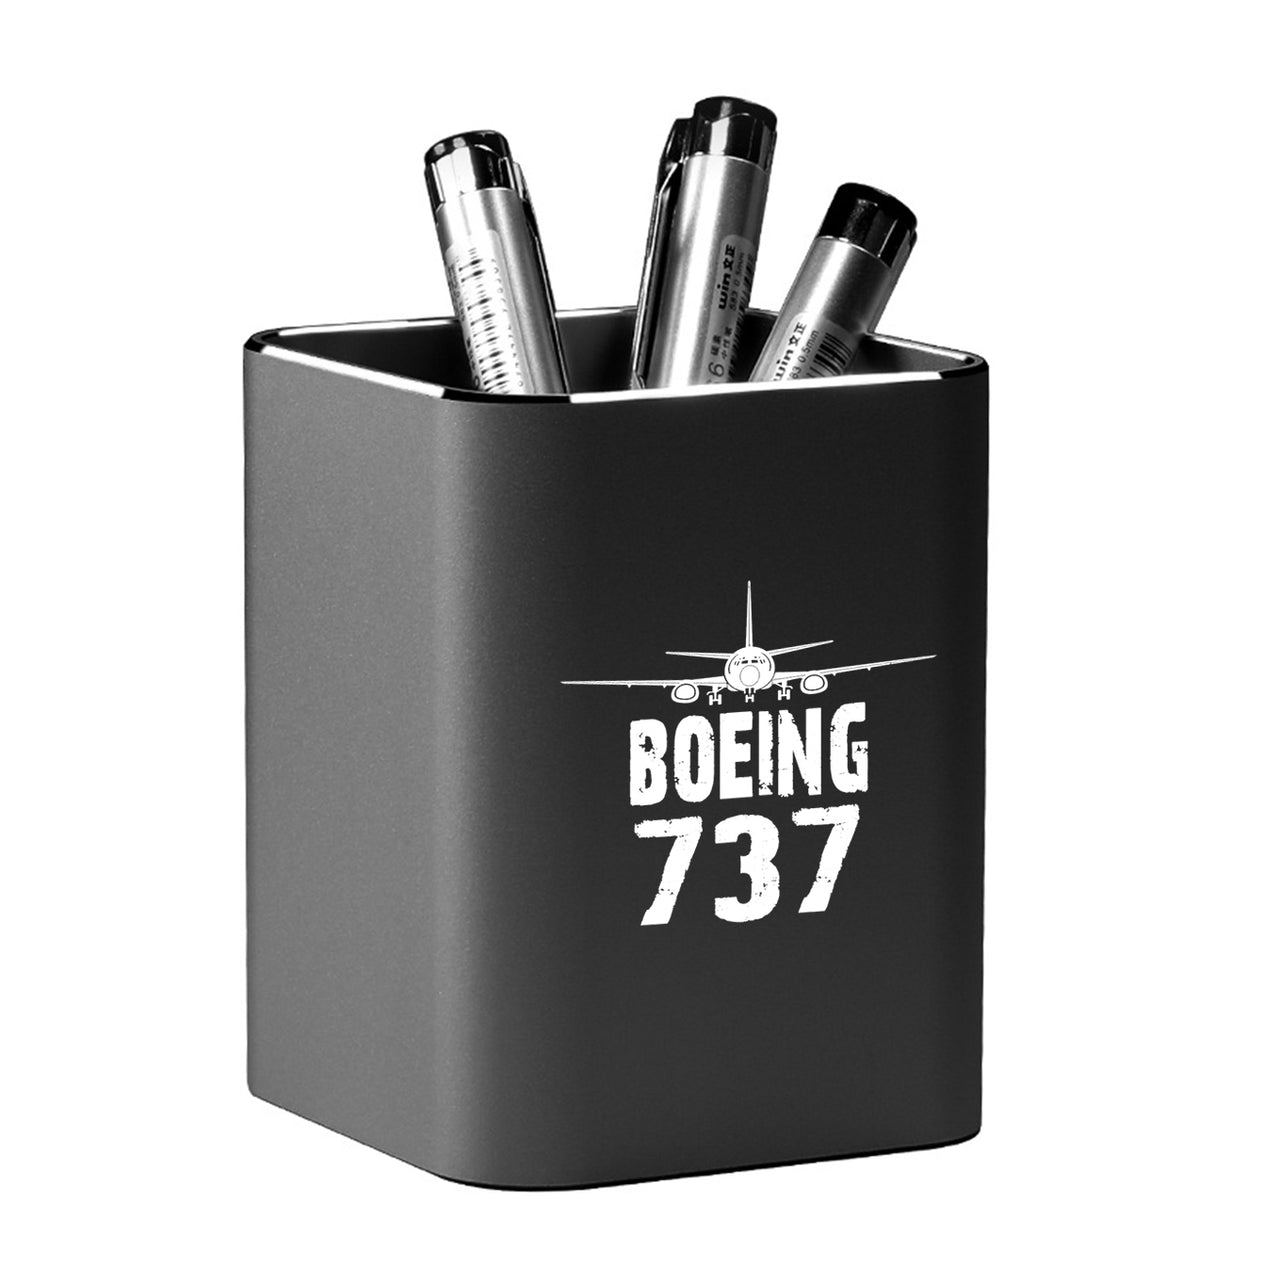 Boeing 737 & Plane Designed Aluminium Alloy Pen Holders